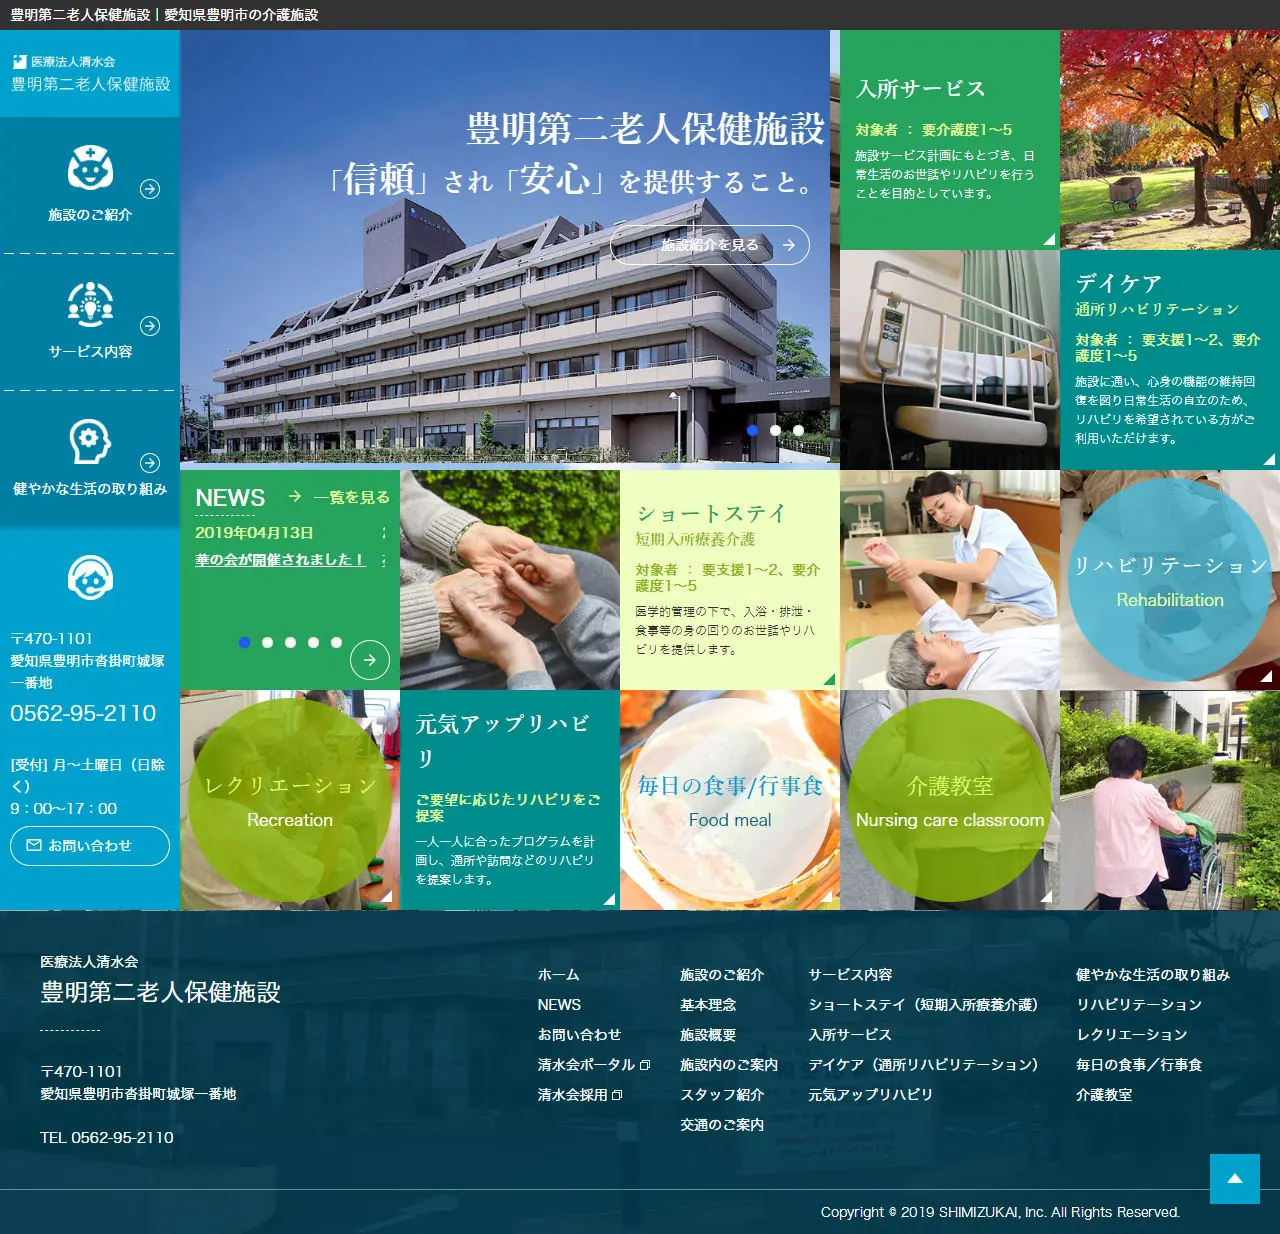 Cơ sở Y tế Người cao tuổi thứ hai Toyoake